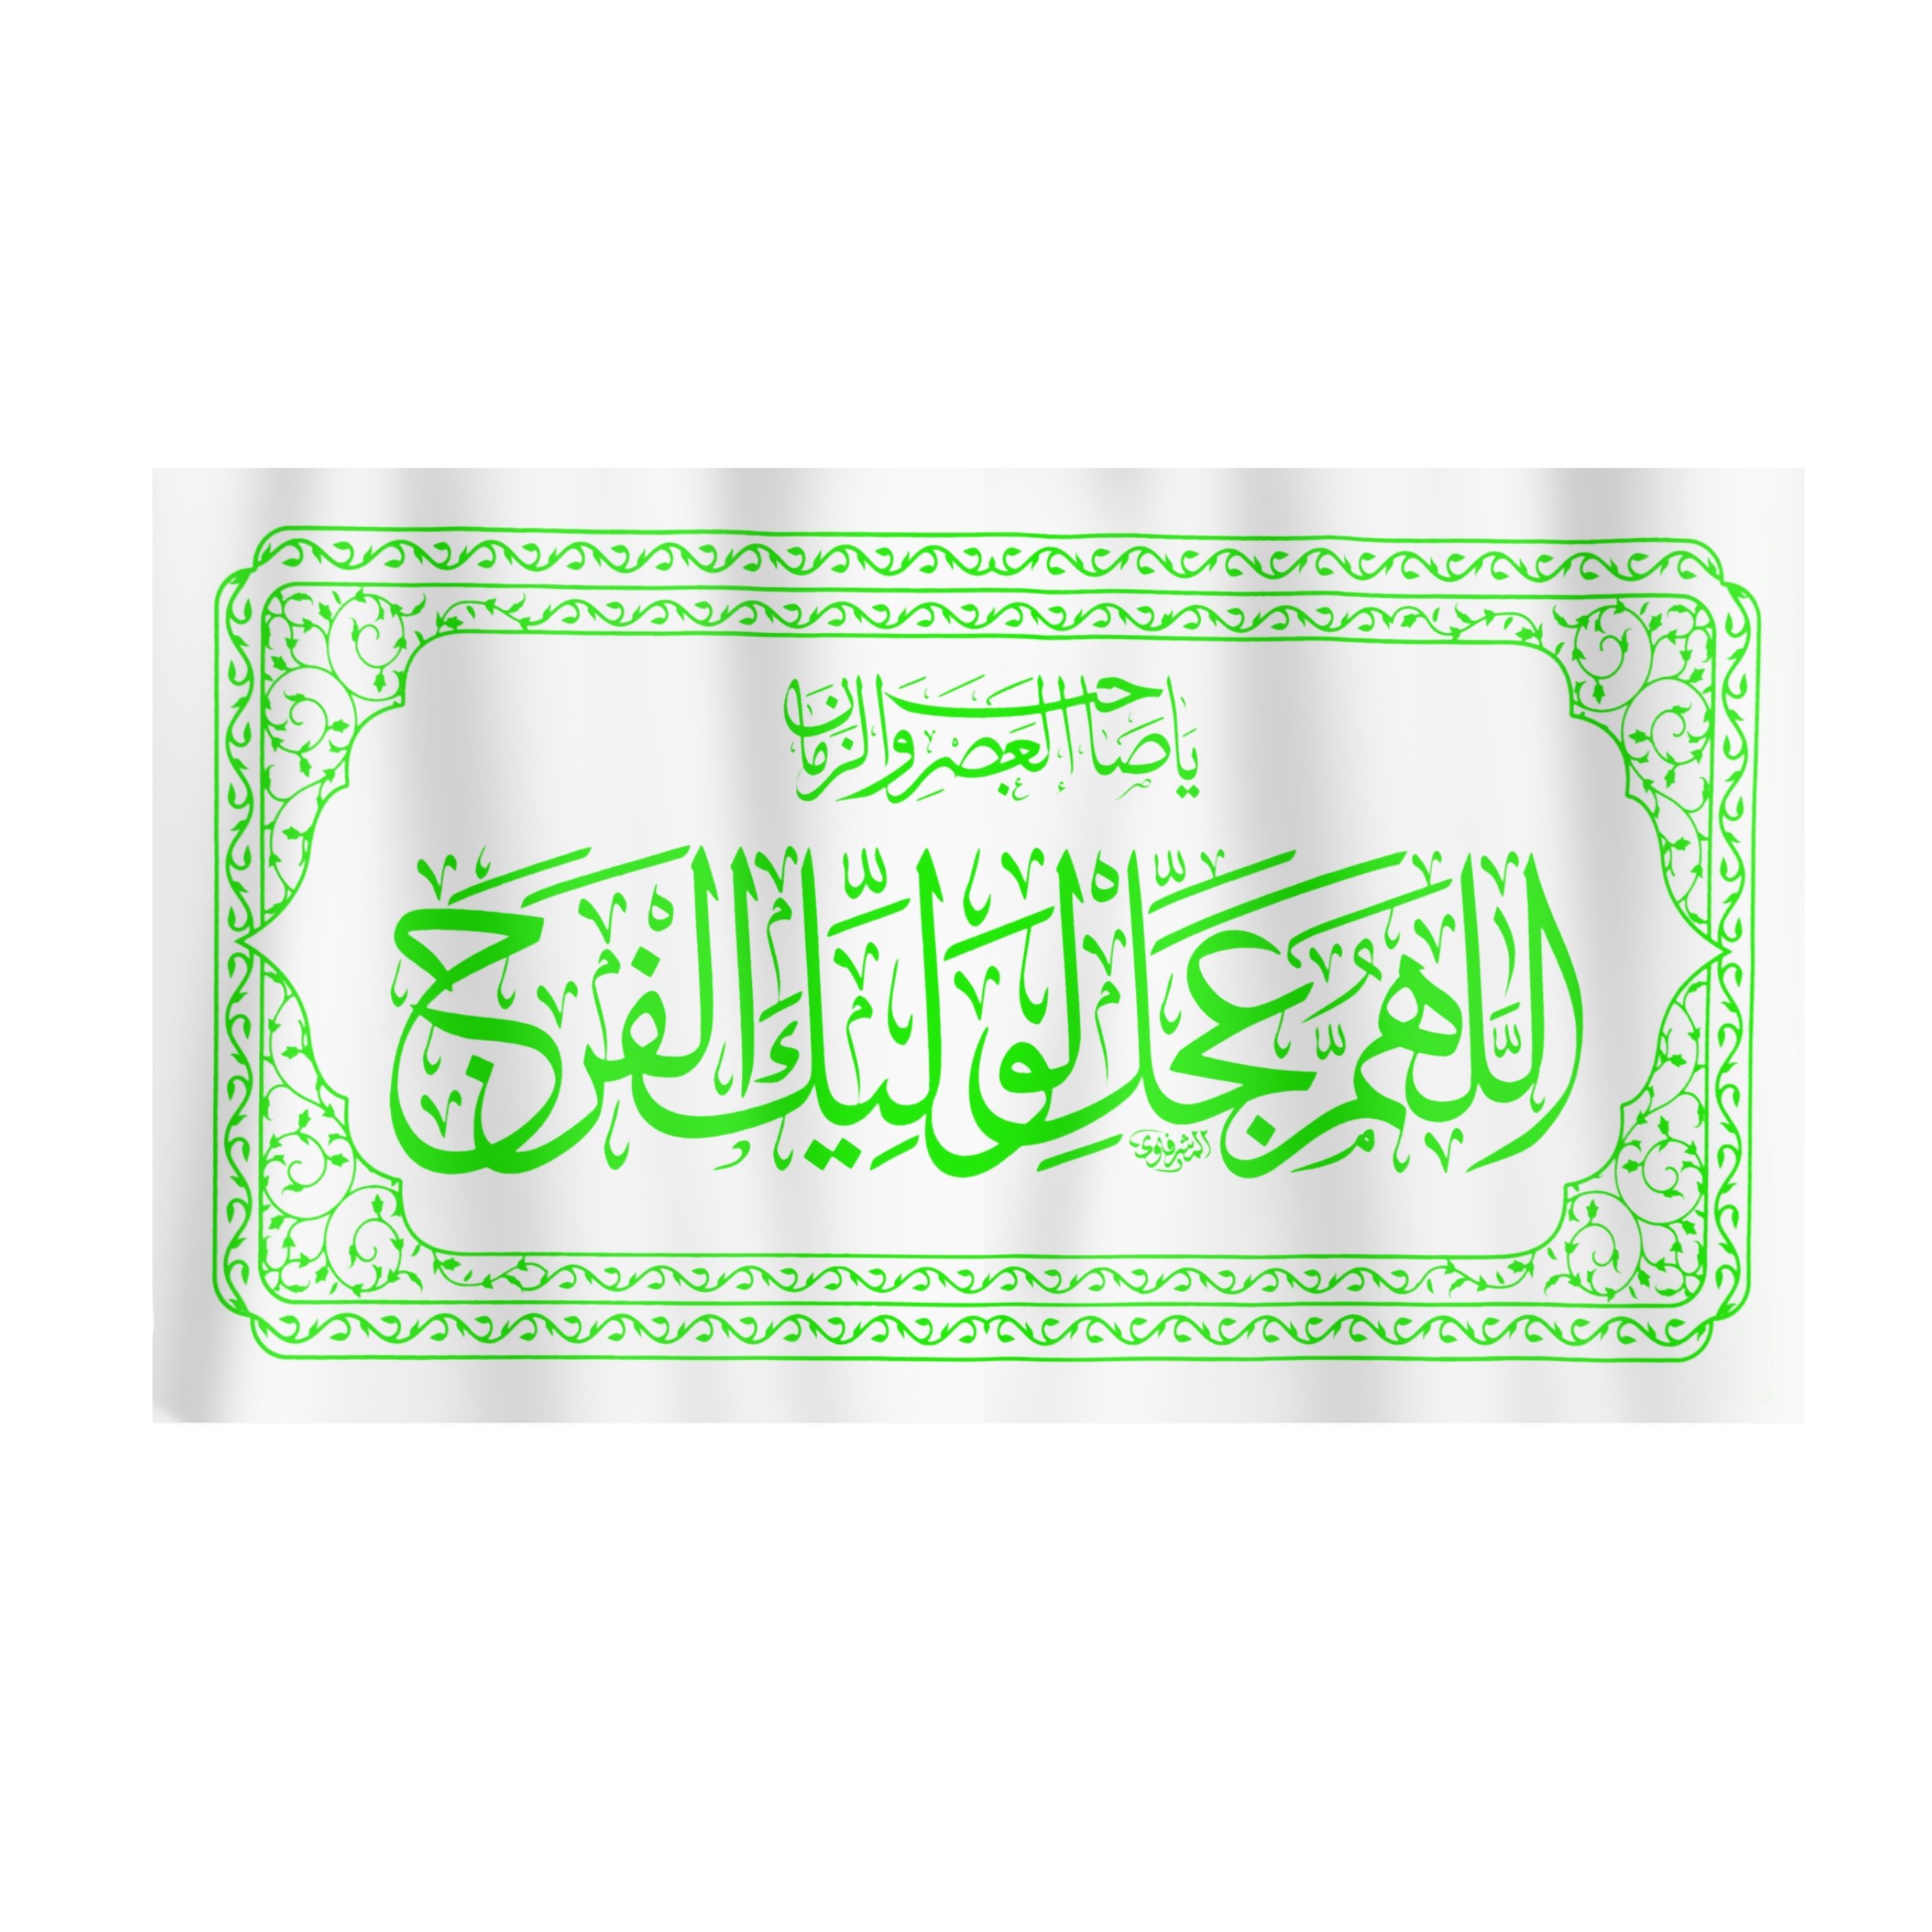 پرچم طرح اللهم عجل لولیک الفرج کد 20001343